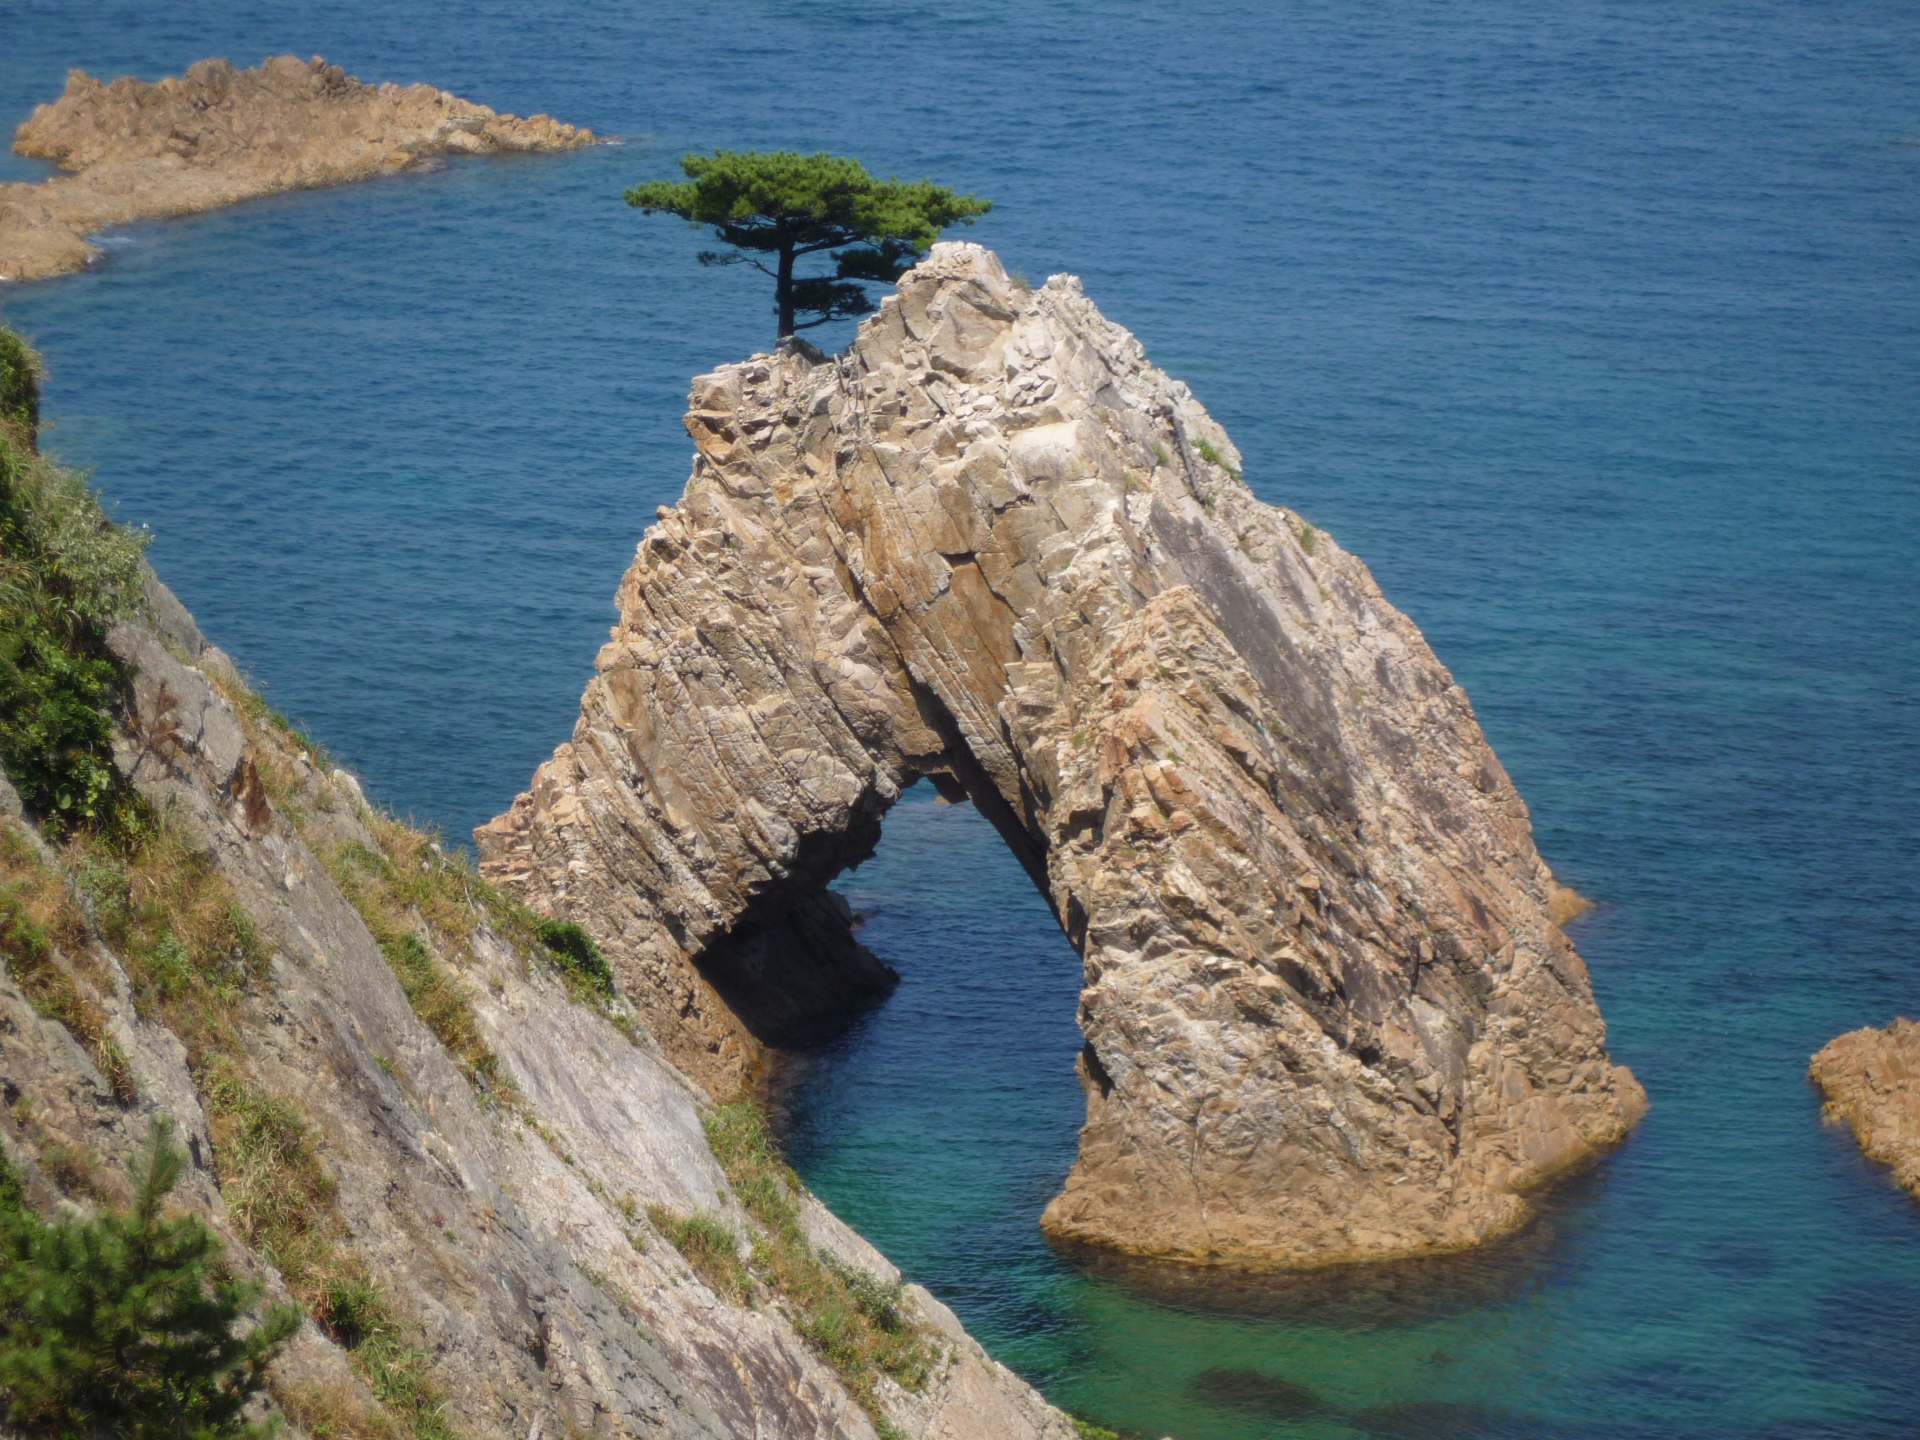 La cueva de 50 m (164 pies) de circunferencia y 10 m (33 pies) de altura está coronada por un bonito pino. Sengan Matsushima es una de las increíbles rocas de la costa de Uradome.